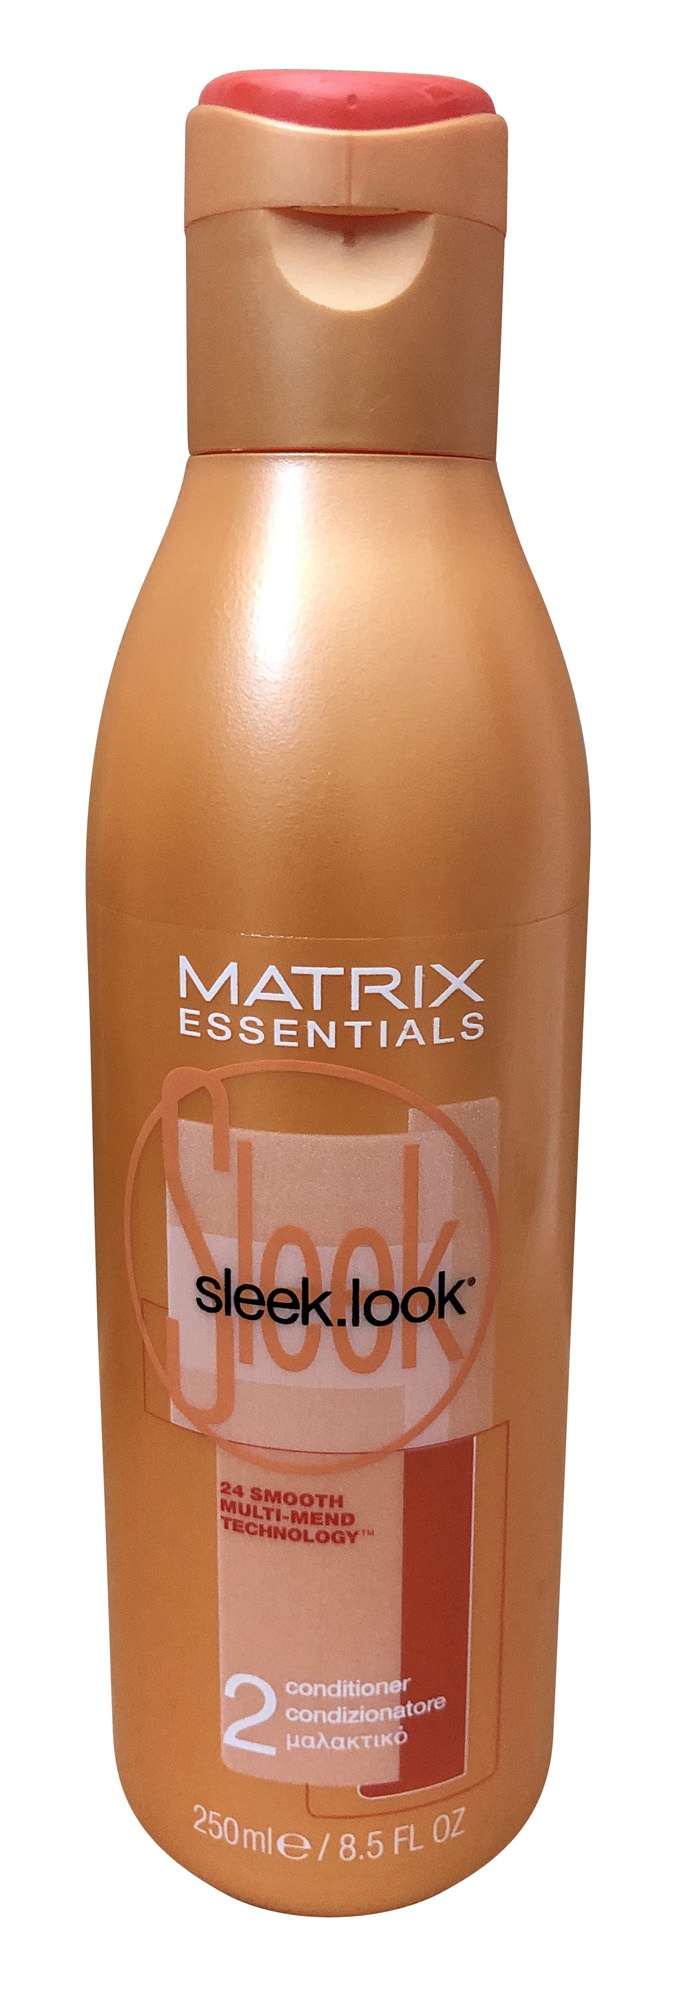 Matrix Essentials Sleek Look Step 2 Conditioner